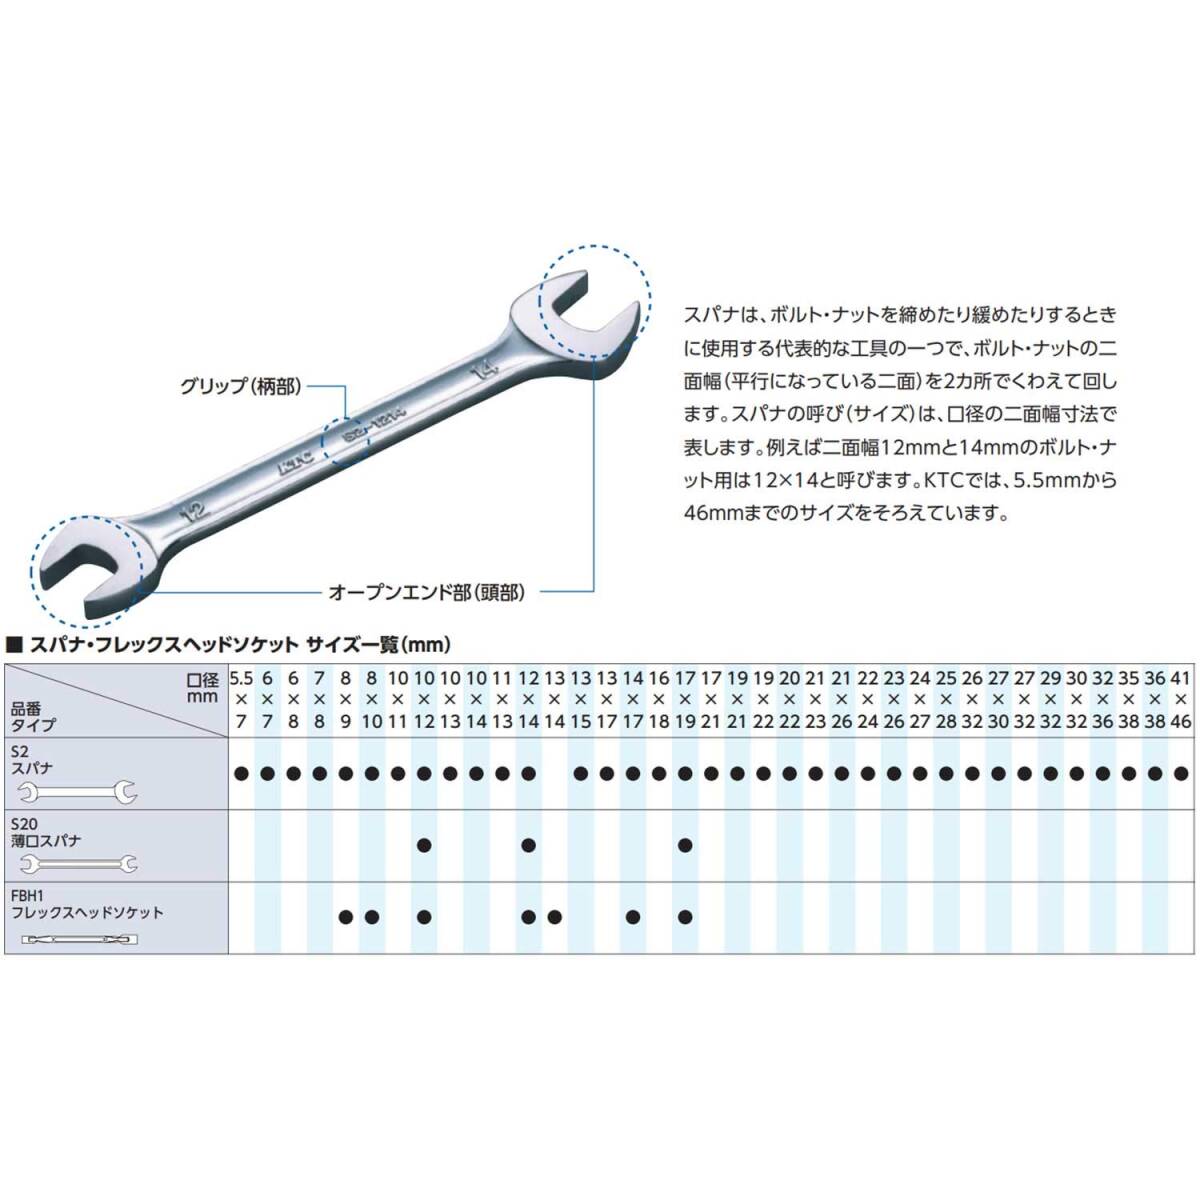 【特価商品】京都機械工具(KTC) コンビネーションレンチ MS2-1/8_画像3